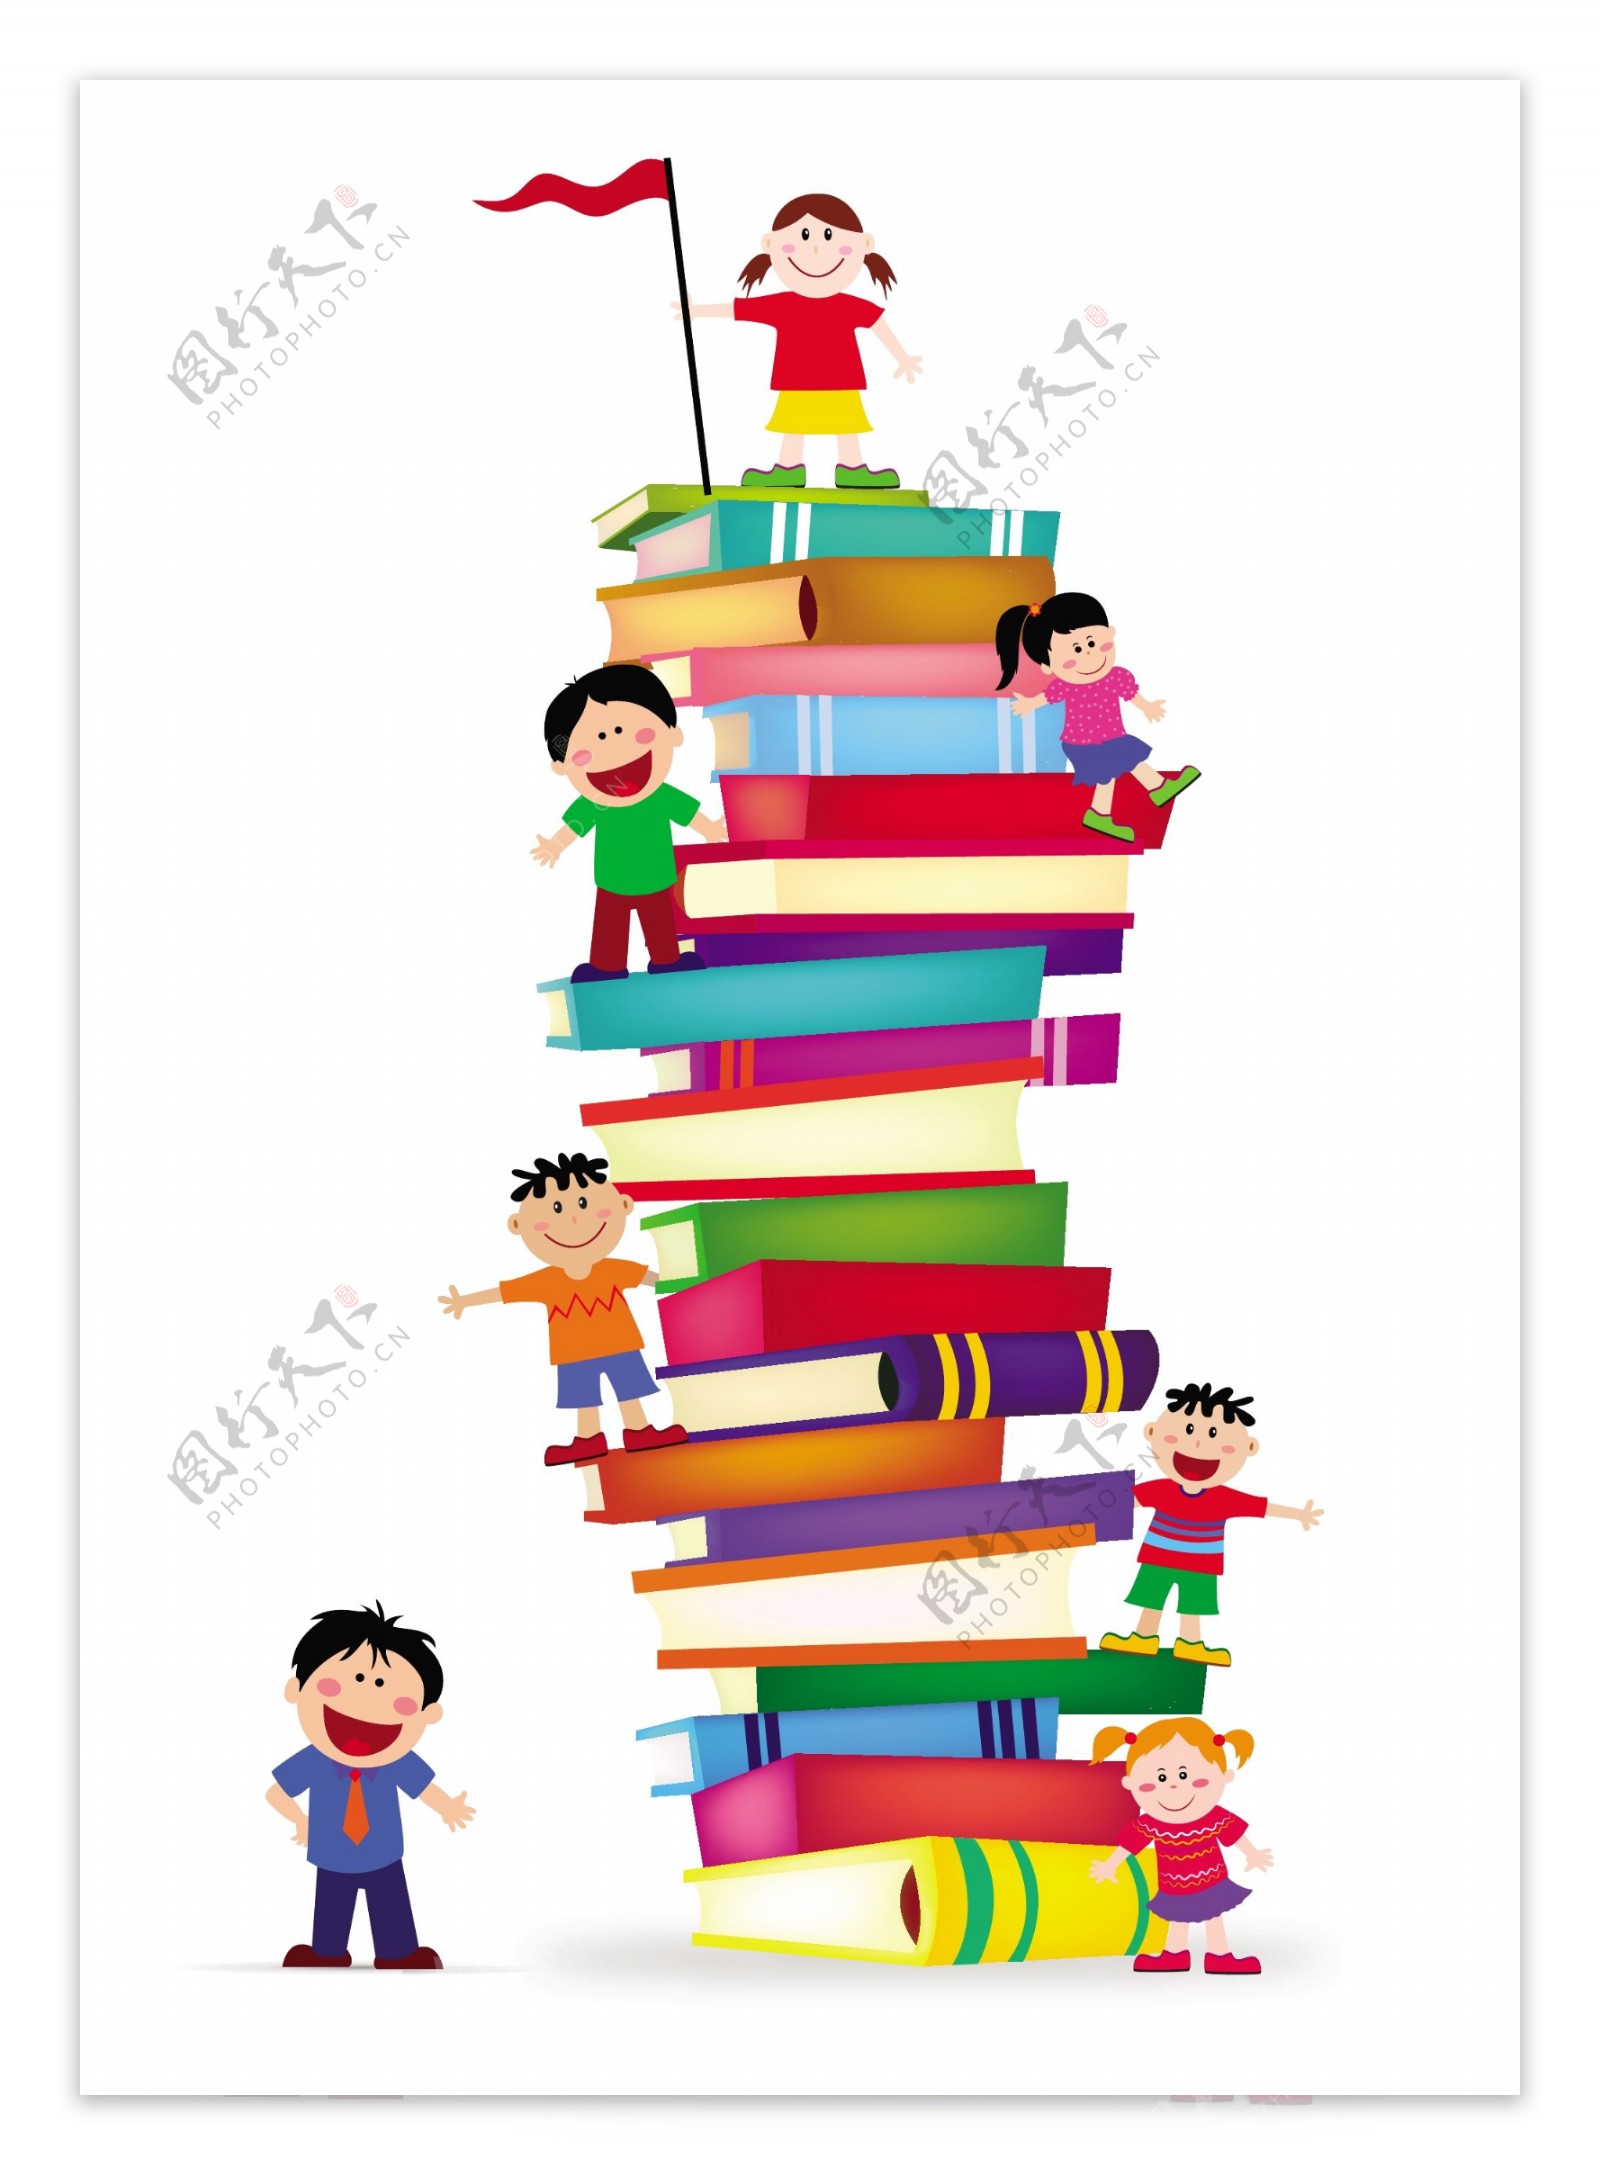 孩子们爬上一堆书